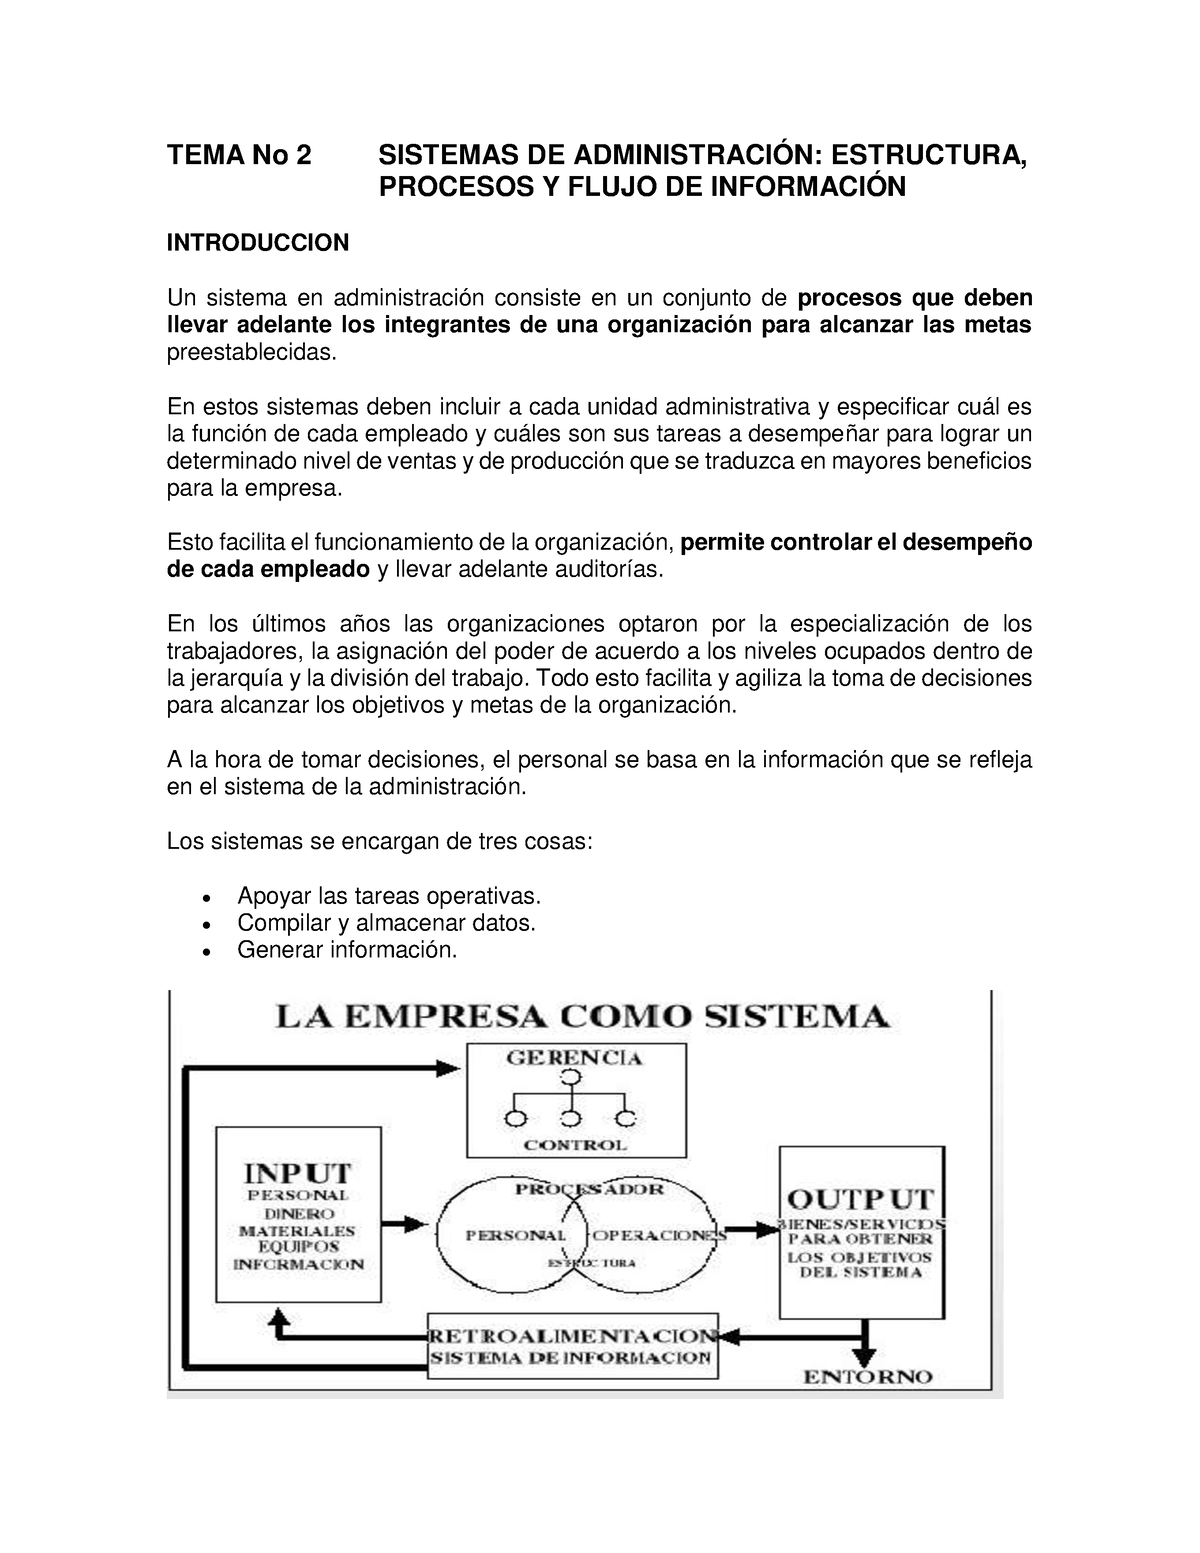 TEMA No. 2 Sistemas DE Administracion - TEMA No 2 SISTEMAS DE  ADMINISTRACIÓN: ESTRUCTURA, PROCESOS Y - Studocu